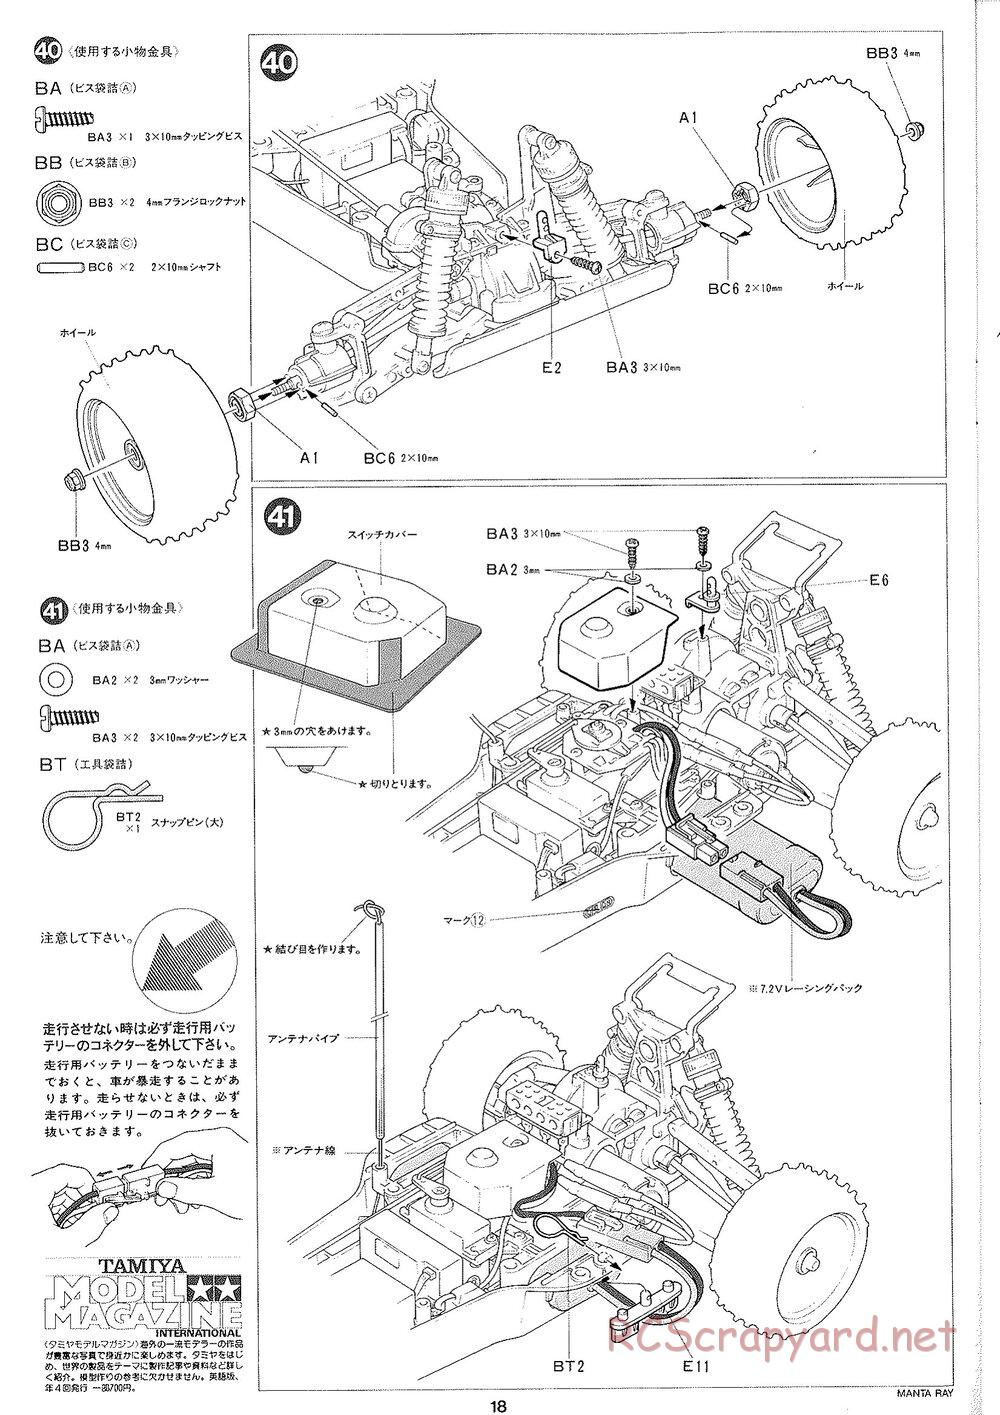 Tamiya - Manta Ray 2005 - DF-01 Chassis - Manual - Page 19